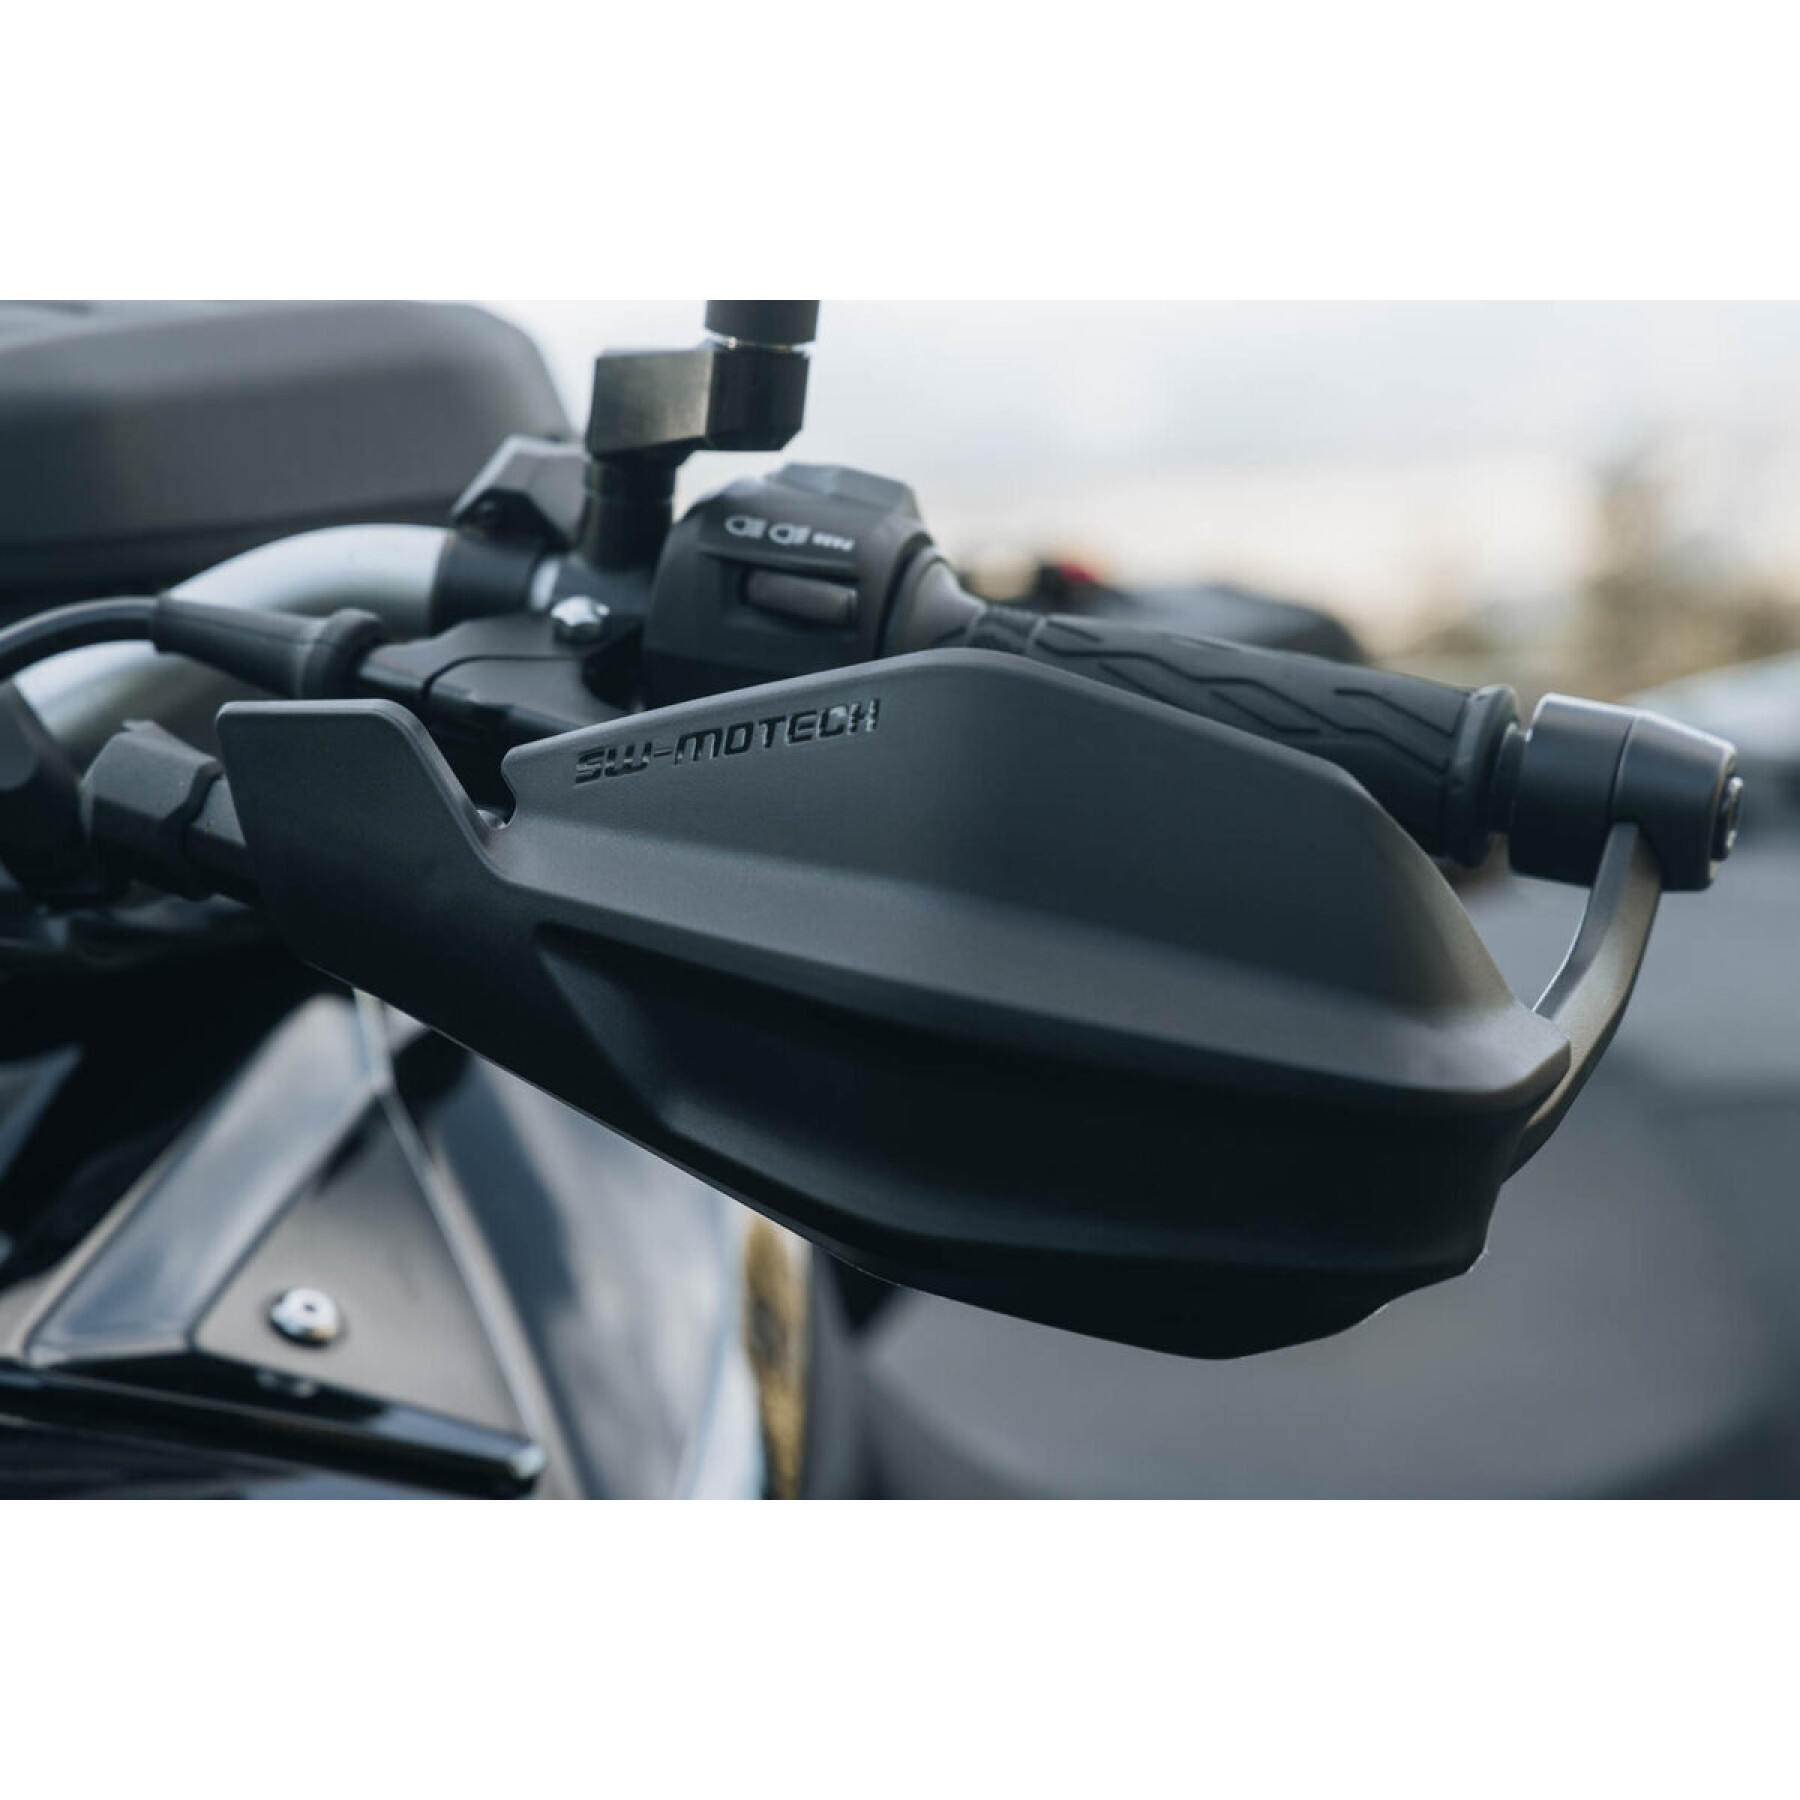 Motorcycle handguard kit SW-Motech Adventure MV Agusta Brutale 800, Yamaha Ténéré 700